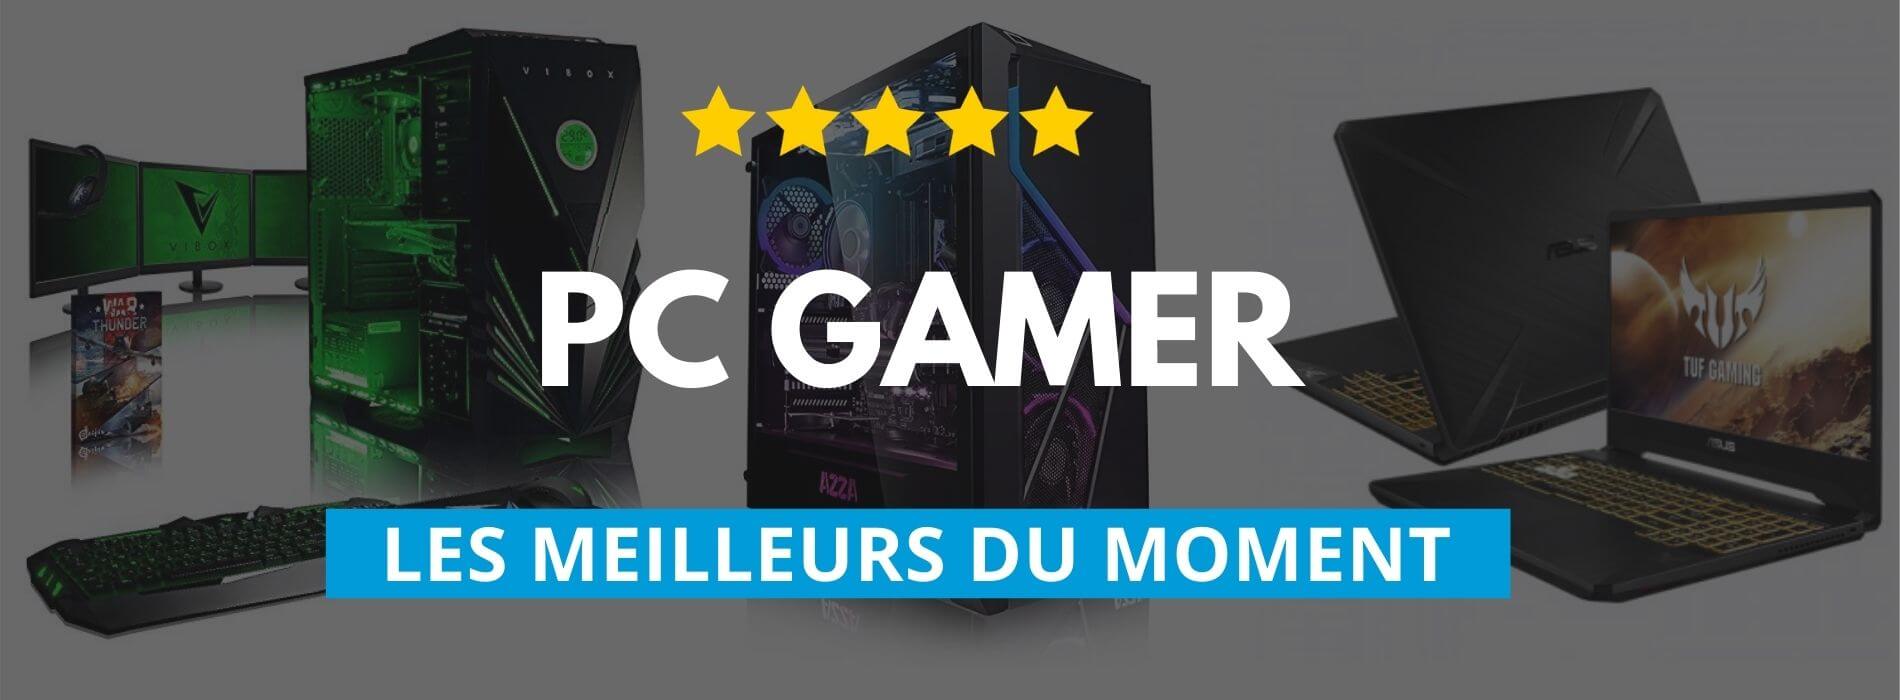 MEGAPORT : Mon avis sur leurs PC Gamer (faut-il les acheter ?) 